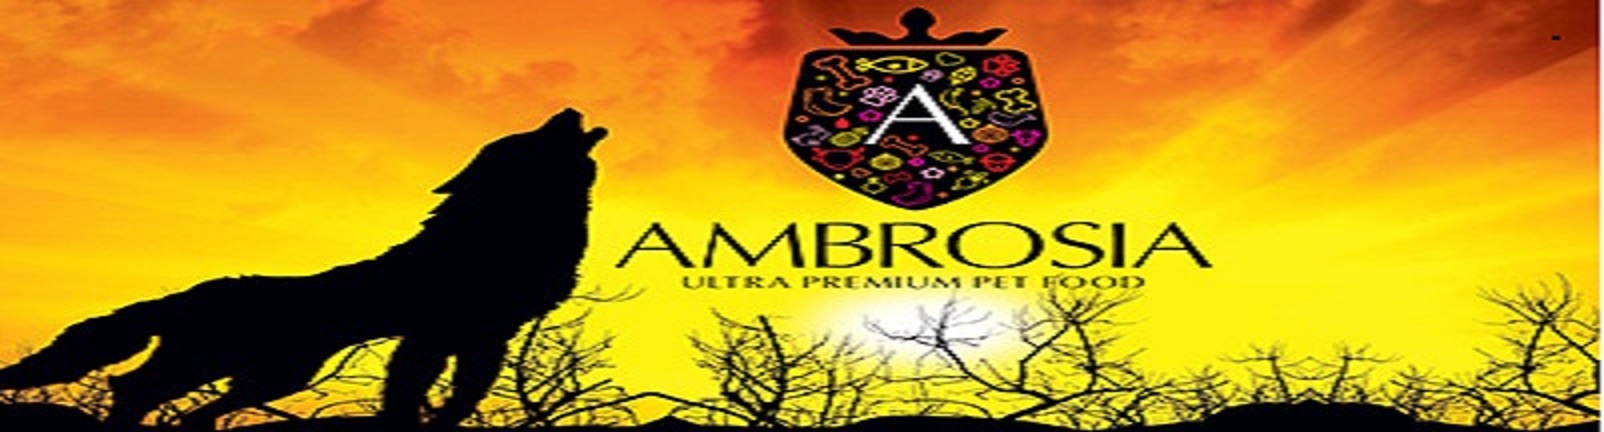 ambrosia-logo-pp